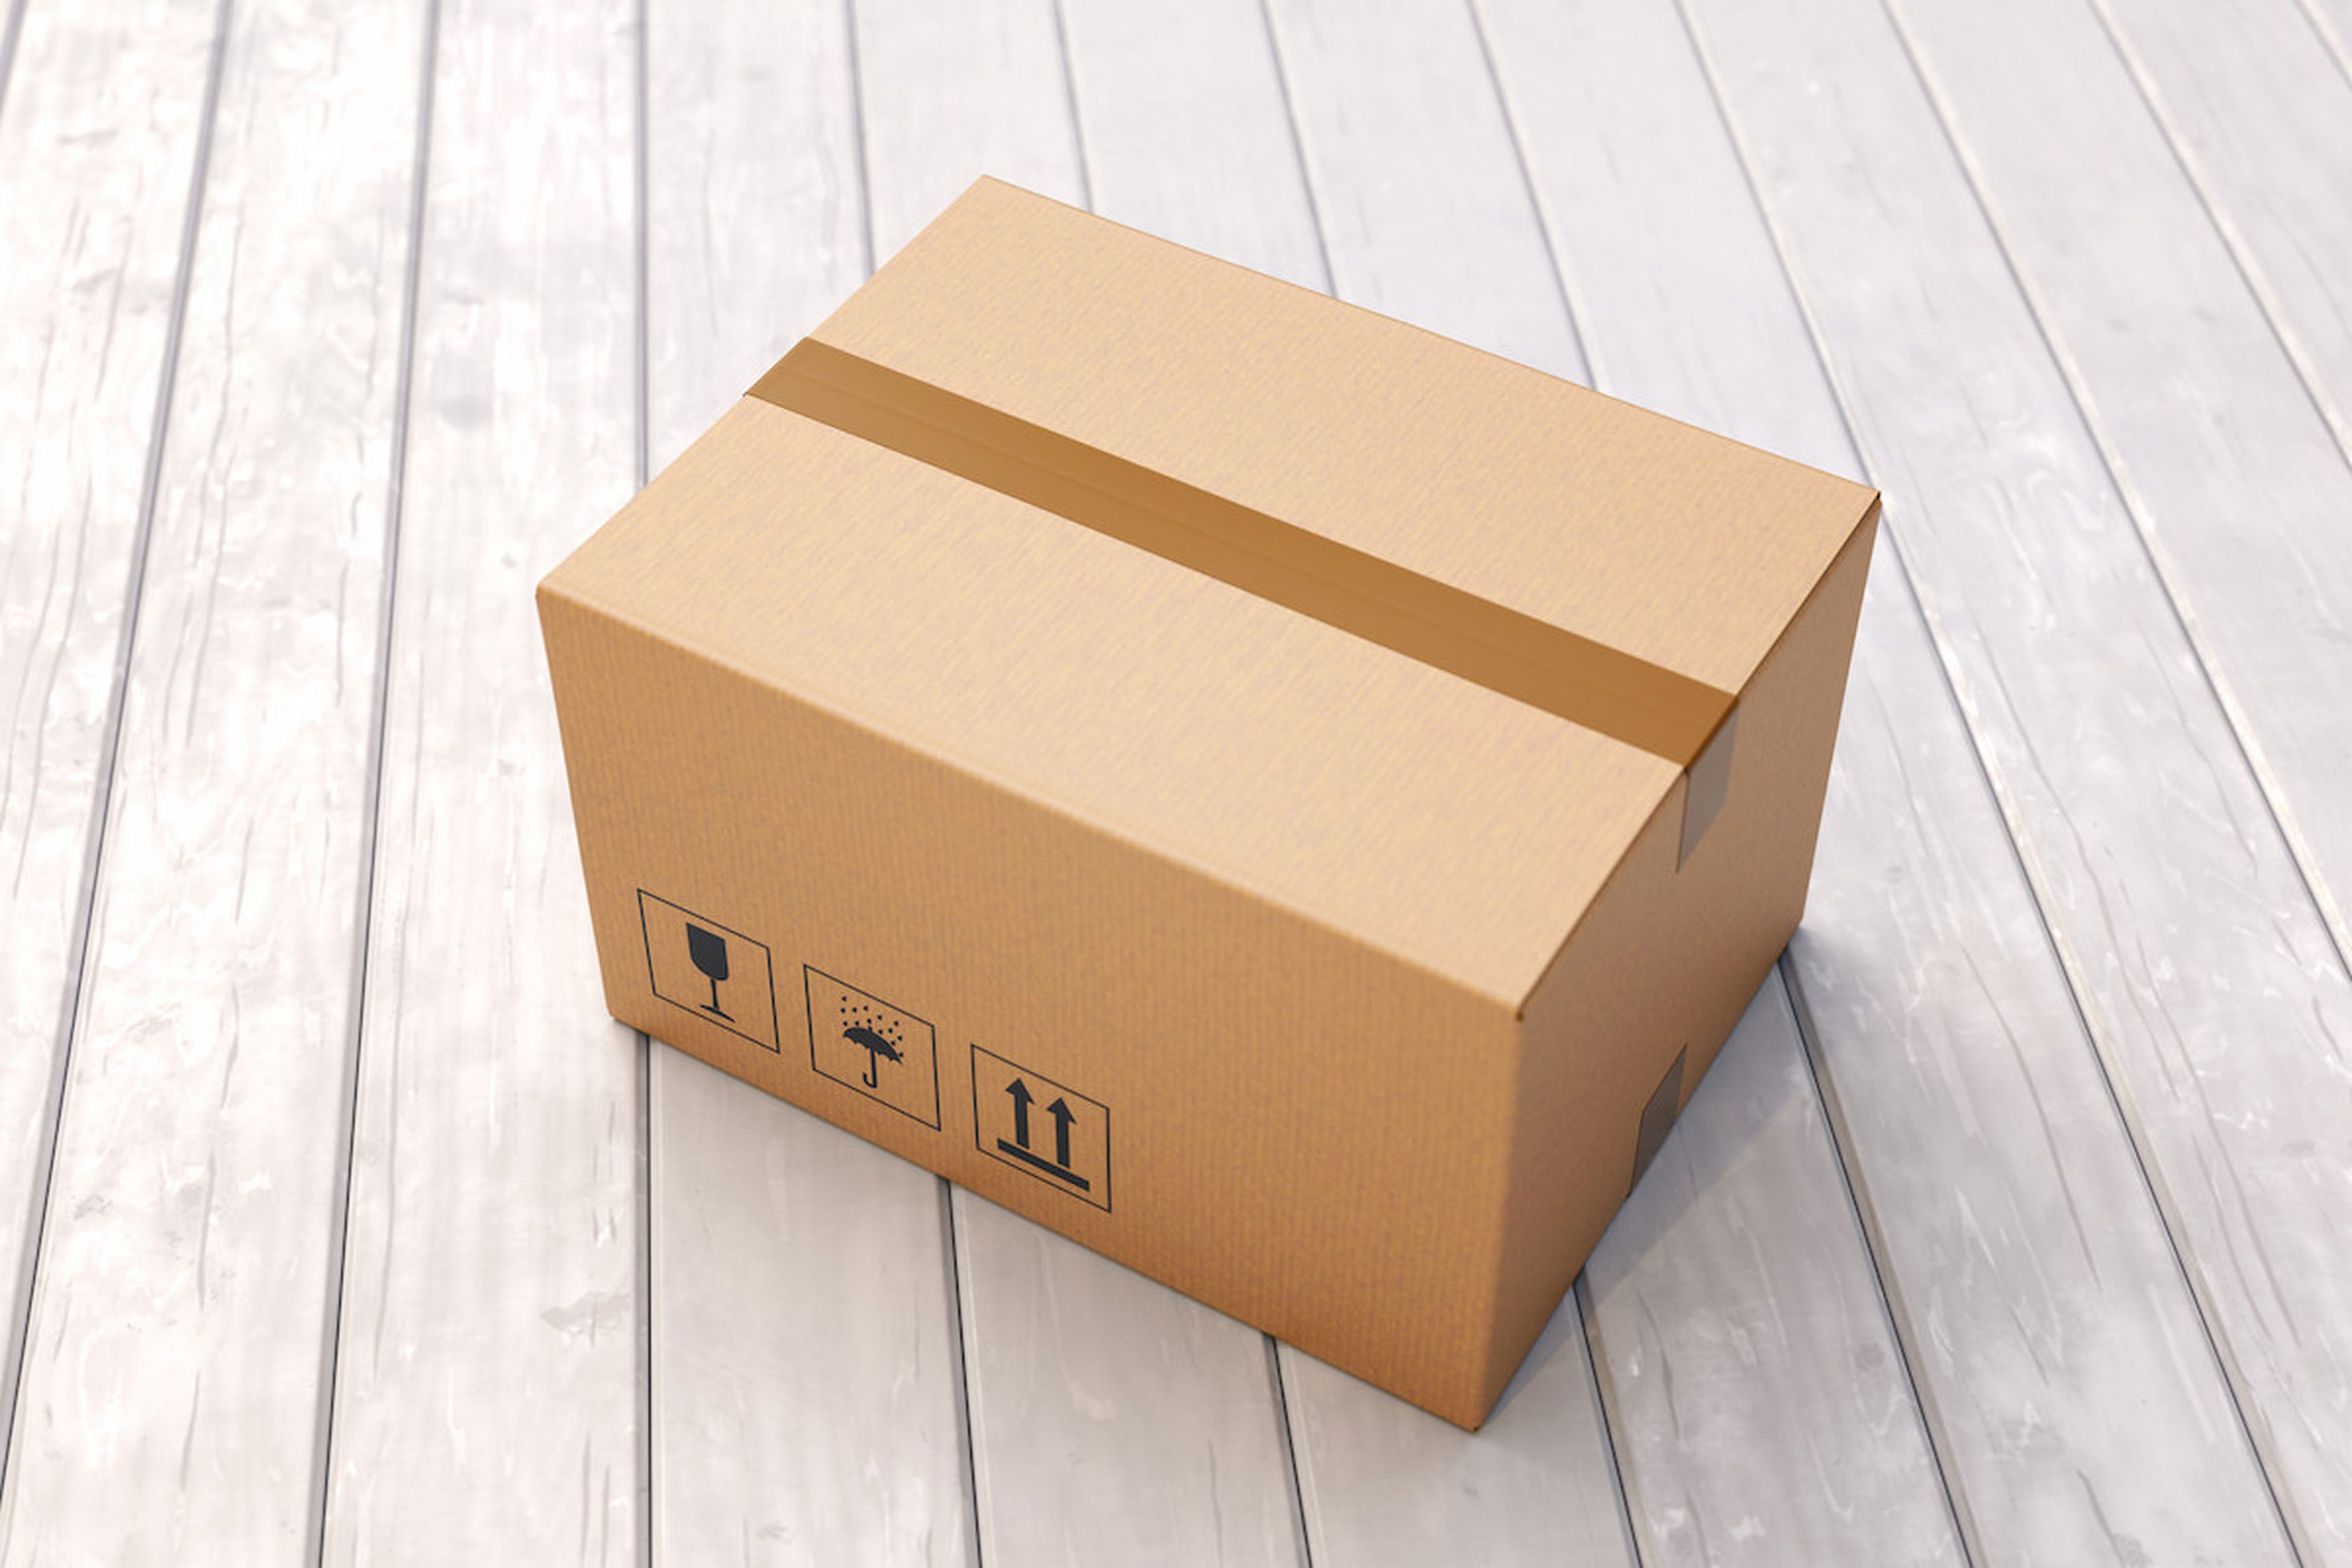 Cajas de cartón, embalaje, pedidos, transporte, paquetes